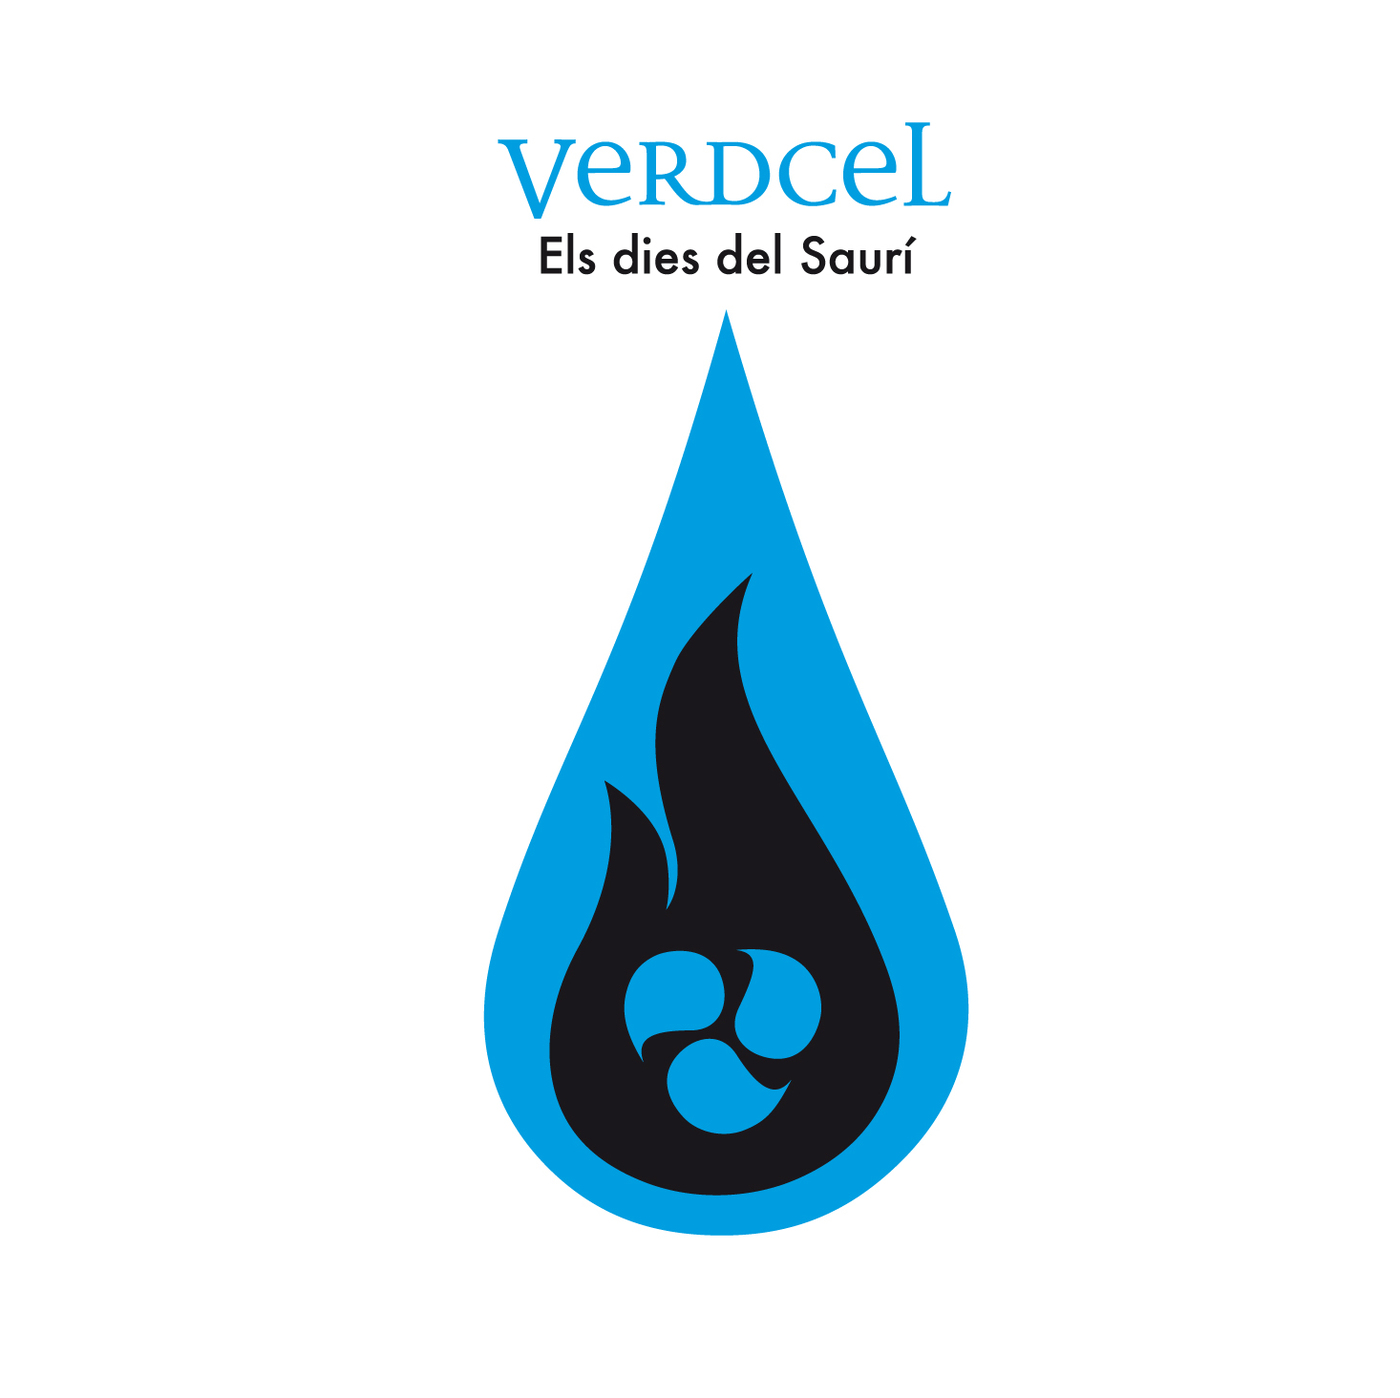 Verdcel - Els dies del Saurí | musica en valencià